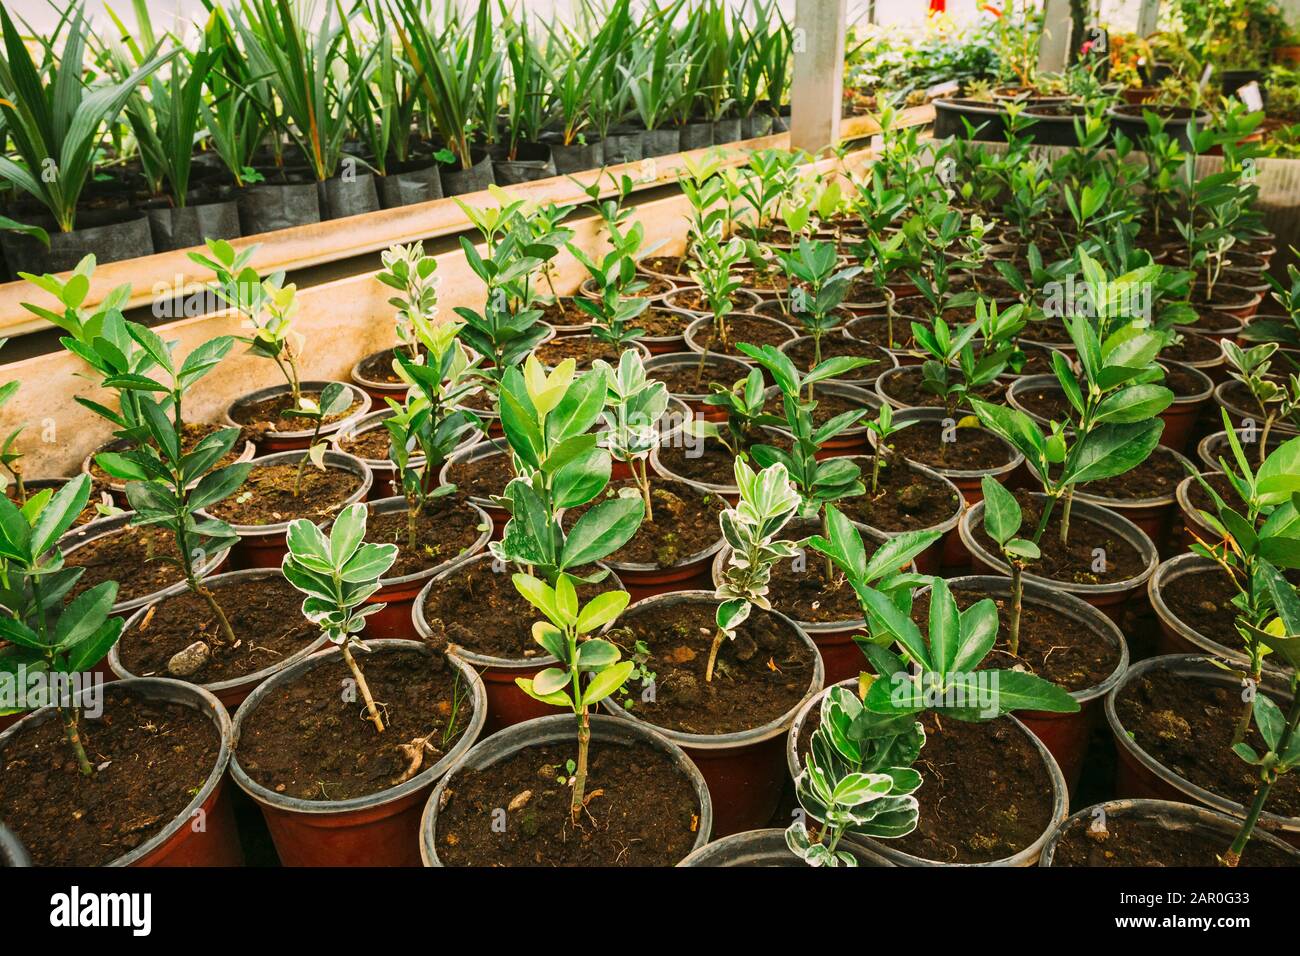 Grünen Sprossen von Pflanzen aus dem Boden In Töpfen im Gewächshaus oder Gewächshaus. Frühling, Konzept des neuen Lebens. Stockfoto